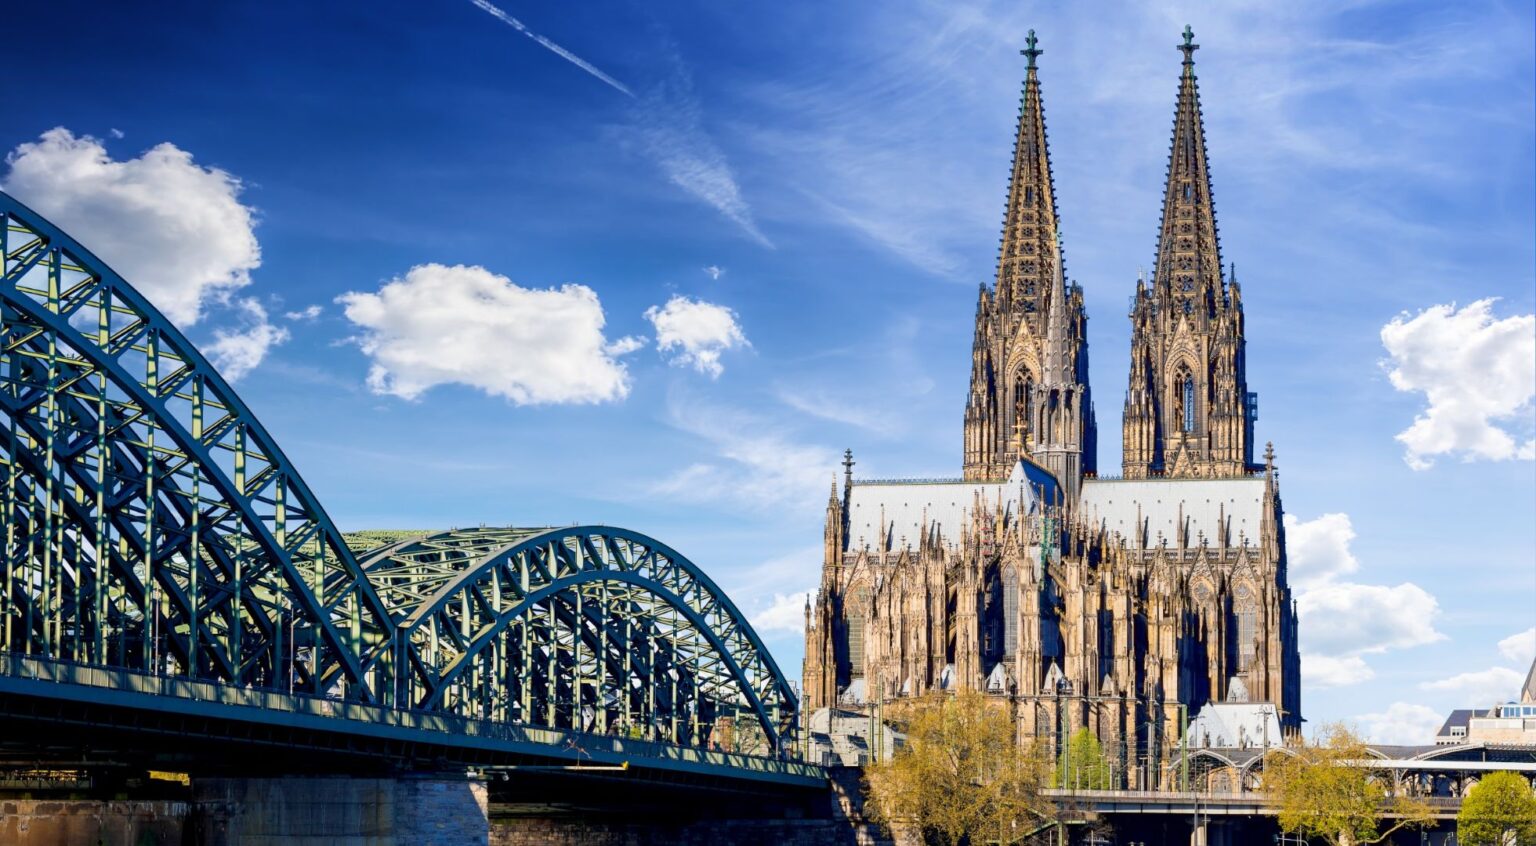 Kostenlose und unverbindliche Immobilienbewertung in Köln - Zenit Immobilien